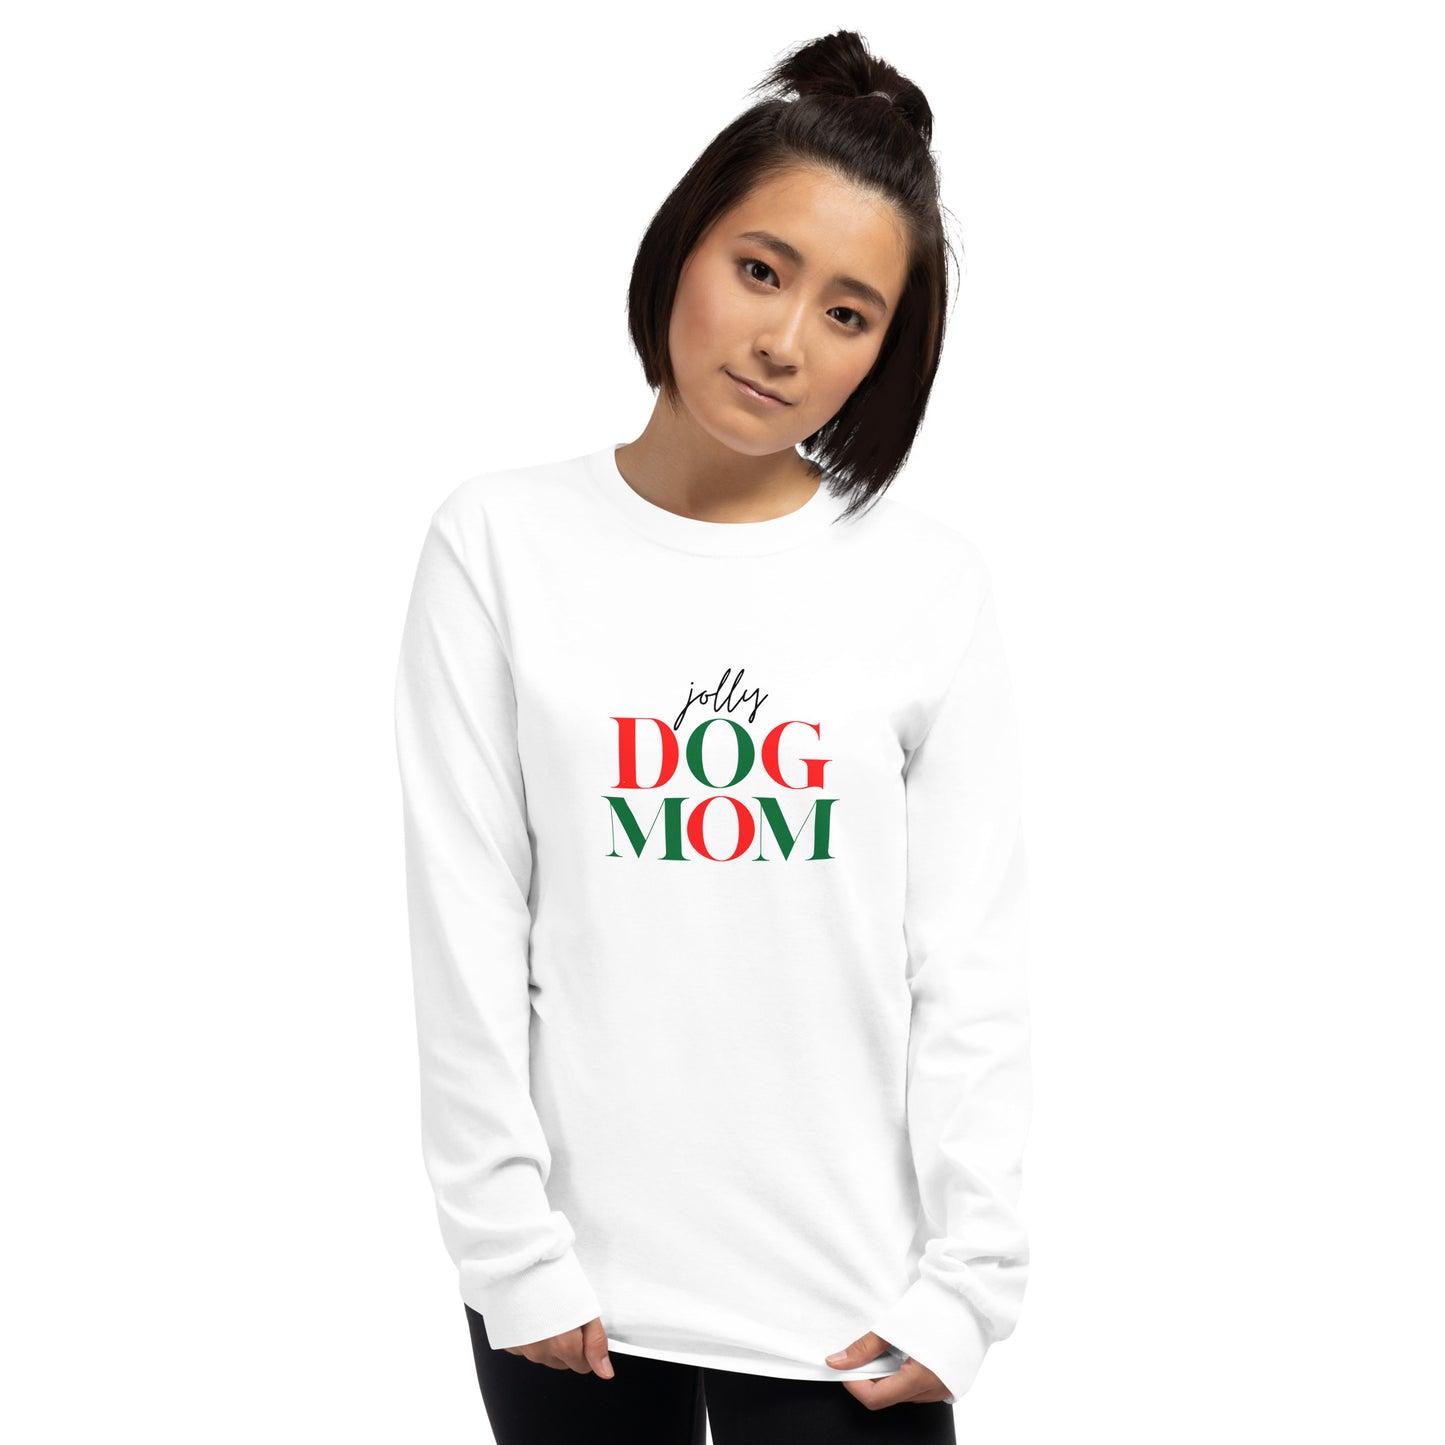 Jolly Dog Mom Unisex Long Sleeve Shirt- White